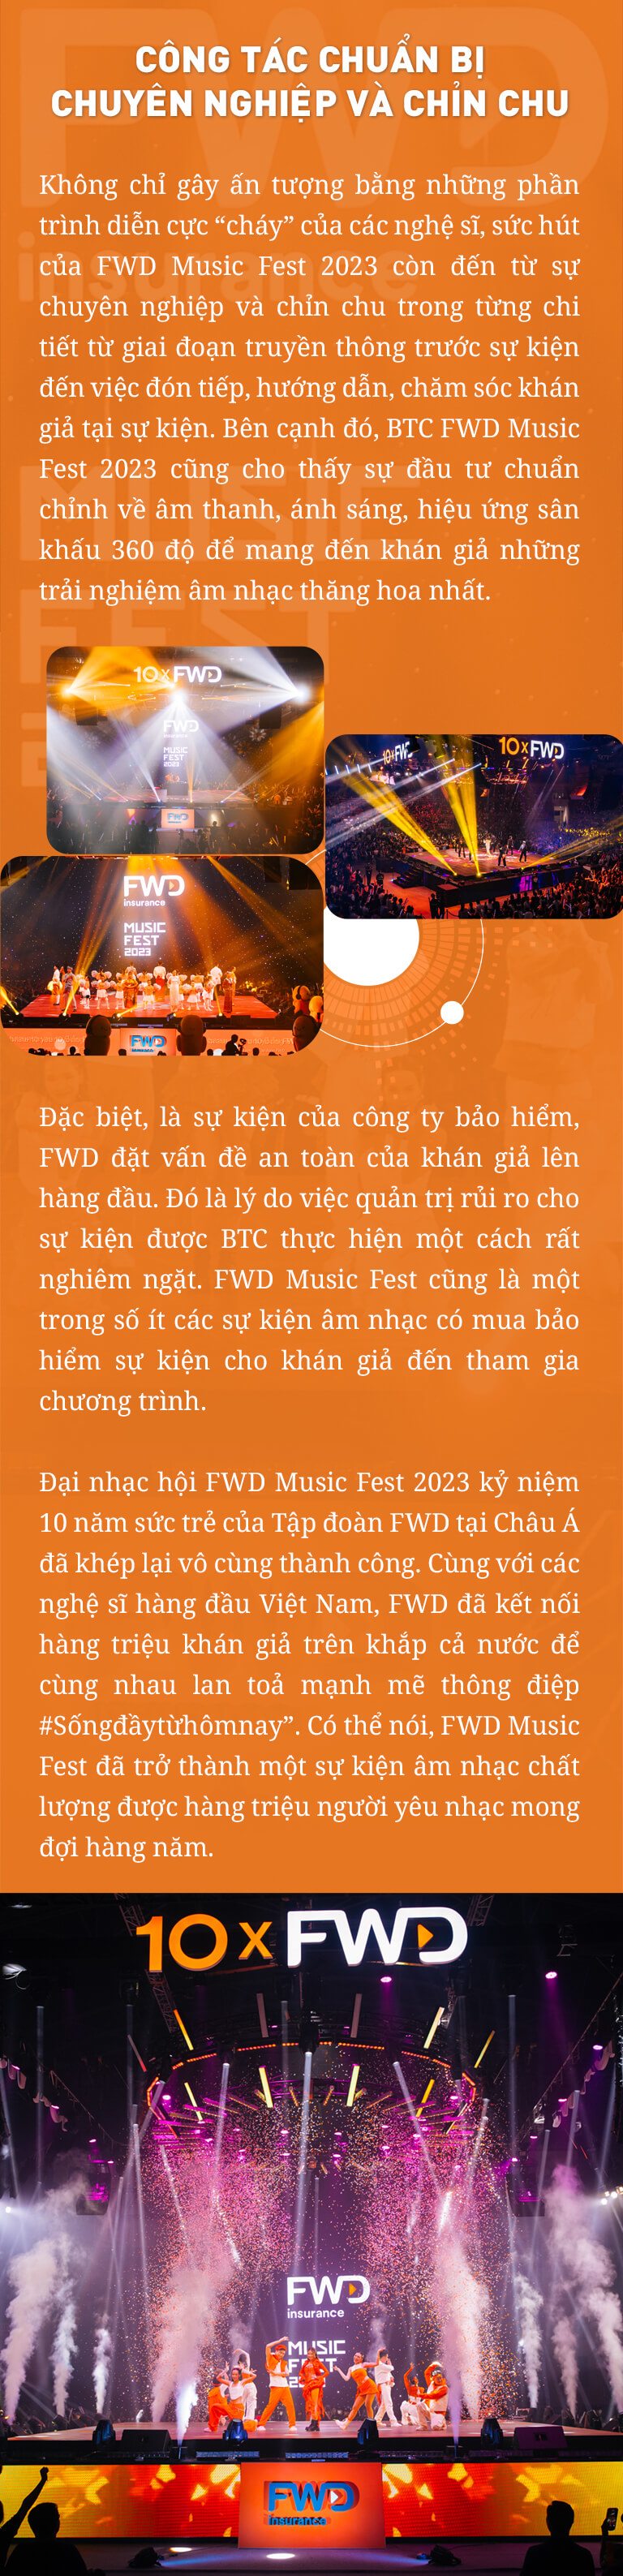 Thương hiệu FWD tiếp tục quyến rũ khán giả với FWD Music Fest 2023 - 10